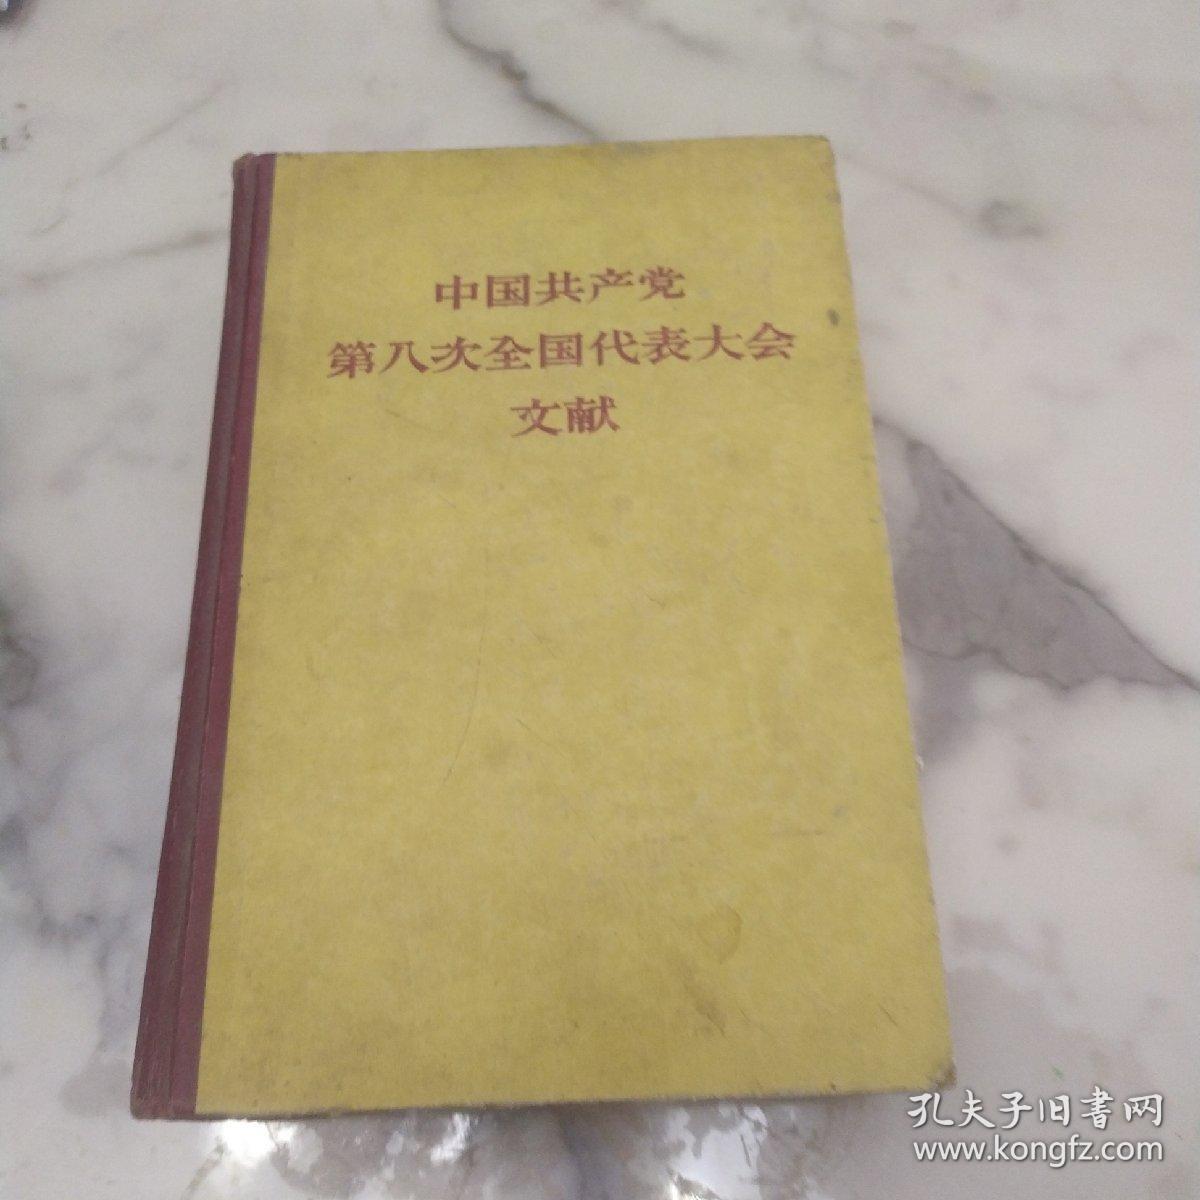 《中国共产党第八次全国代表大会文献》57年精装初版厚册